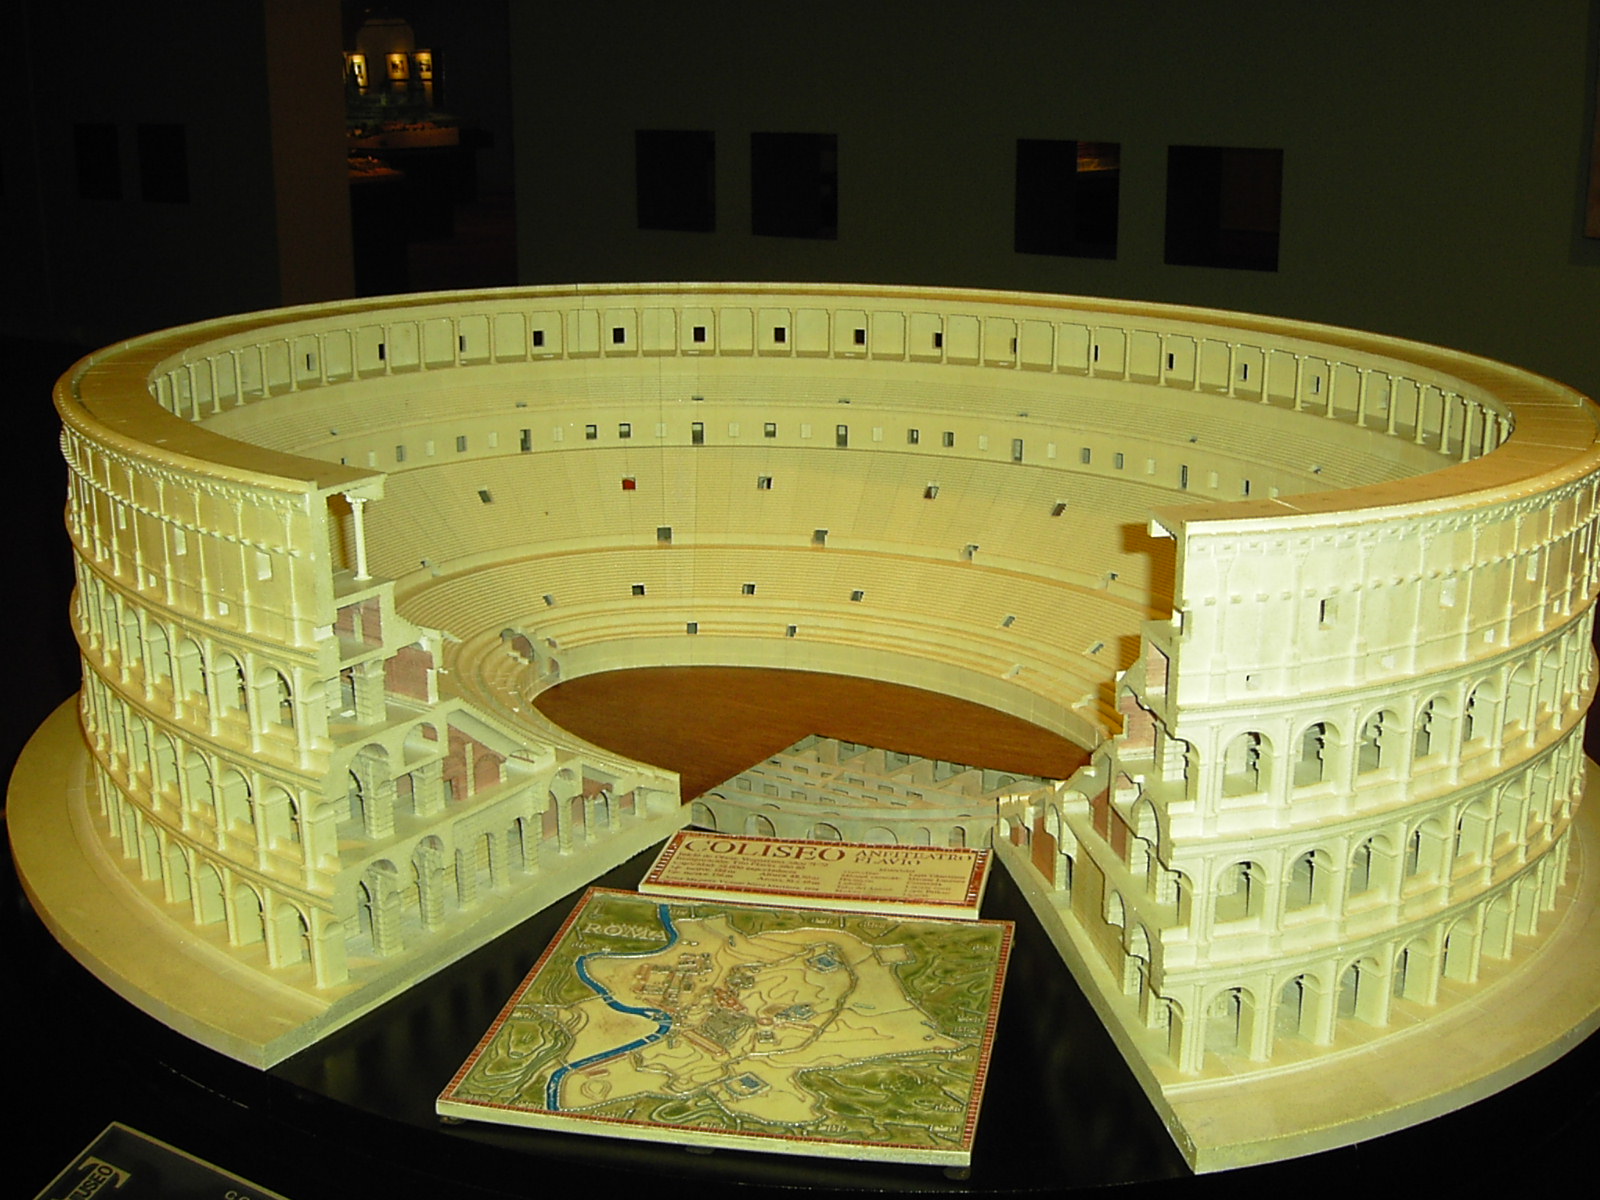 Riproduzione in scala del Colosseo.